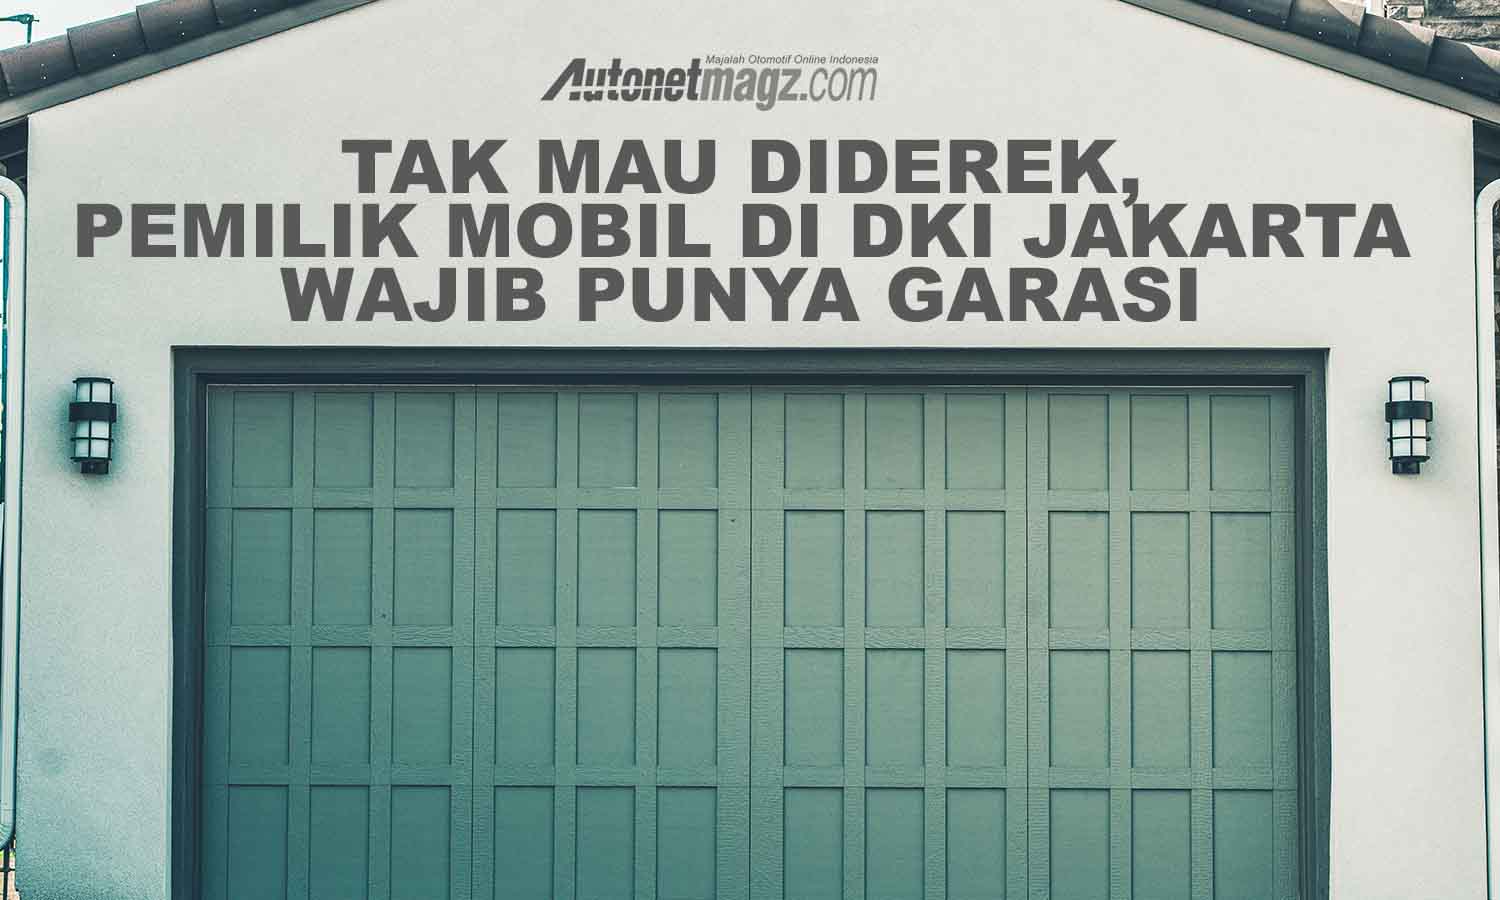 Berita, Perda no 5 2014 pasal 140: Tak Mau Diderek, Pemilik Mobil di DKI Jakarta Wajib Punya Garasi